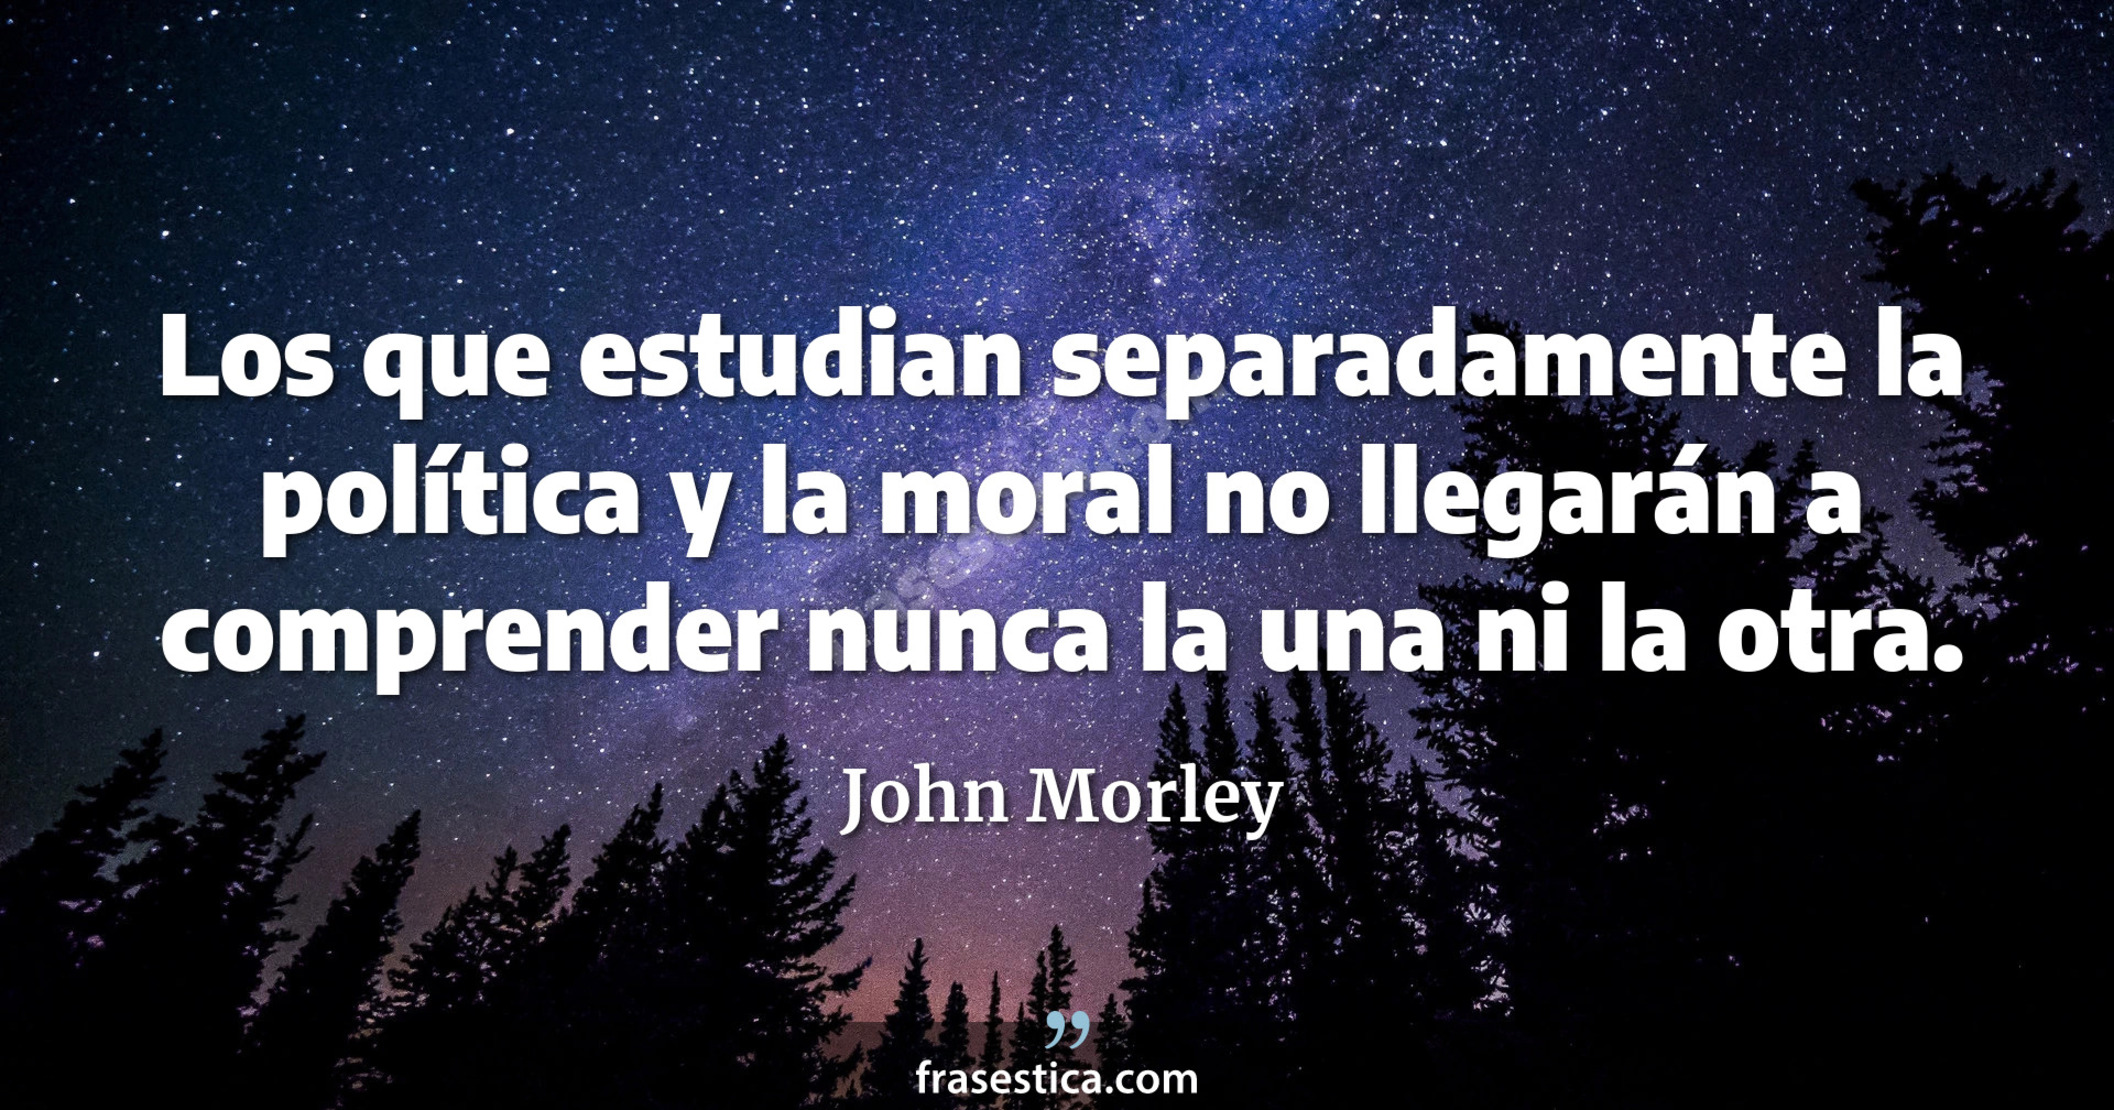 Los que estudian separadamente la política y la moral no llegarán a comprender nunca la una ni la otra. - John Morley